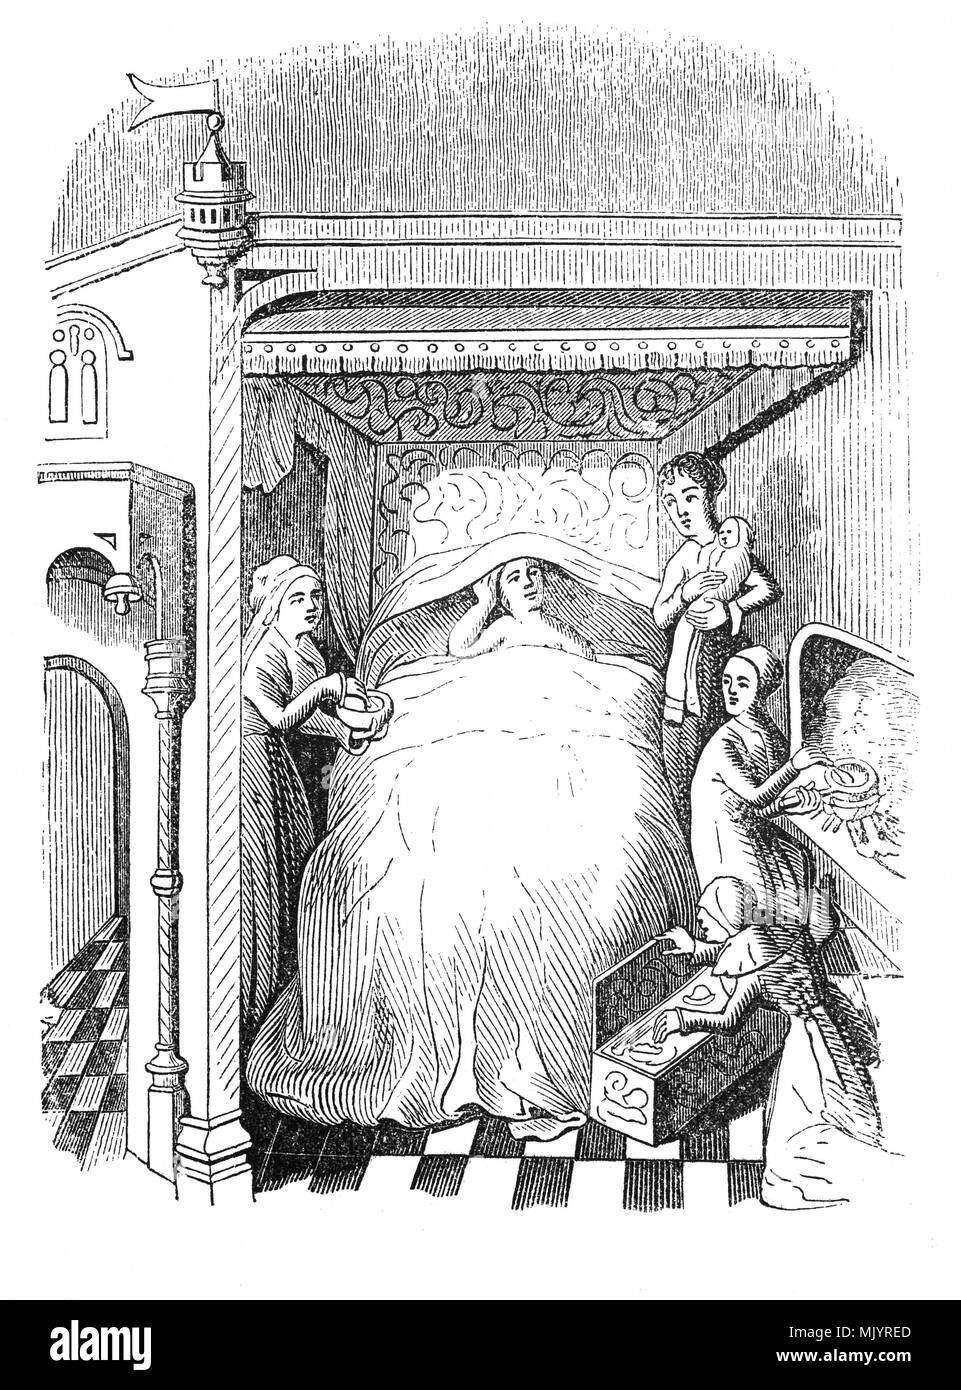 Un 15e - 16e siècle chambre dans laquelle le lit était une occasion de montrer l'état. Probablement issu d'une famille riche, grand, impressionnant, souvent incrustés de pierres précieuses et d'or ou sculptés ornately, lits développé bien au-delà d'une simple plate-forme durant le Moyen Âge. Habituellement faits de bois lourd, les lits des riches ont été soulevées du sol élevée, parfois si haut qu'un stepstool était nécessaire pour les atteindre. Remarque Le nombre de femmes dans l'attente et l'infirmière avec un enfant, peut-être après l'accouchement. Banque D'Images